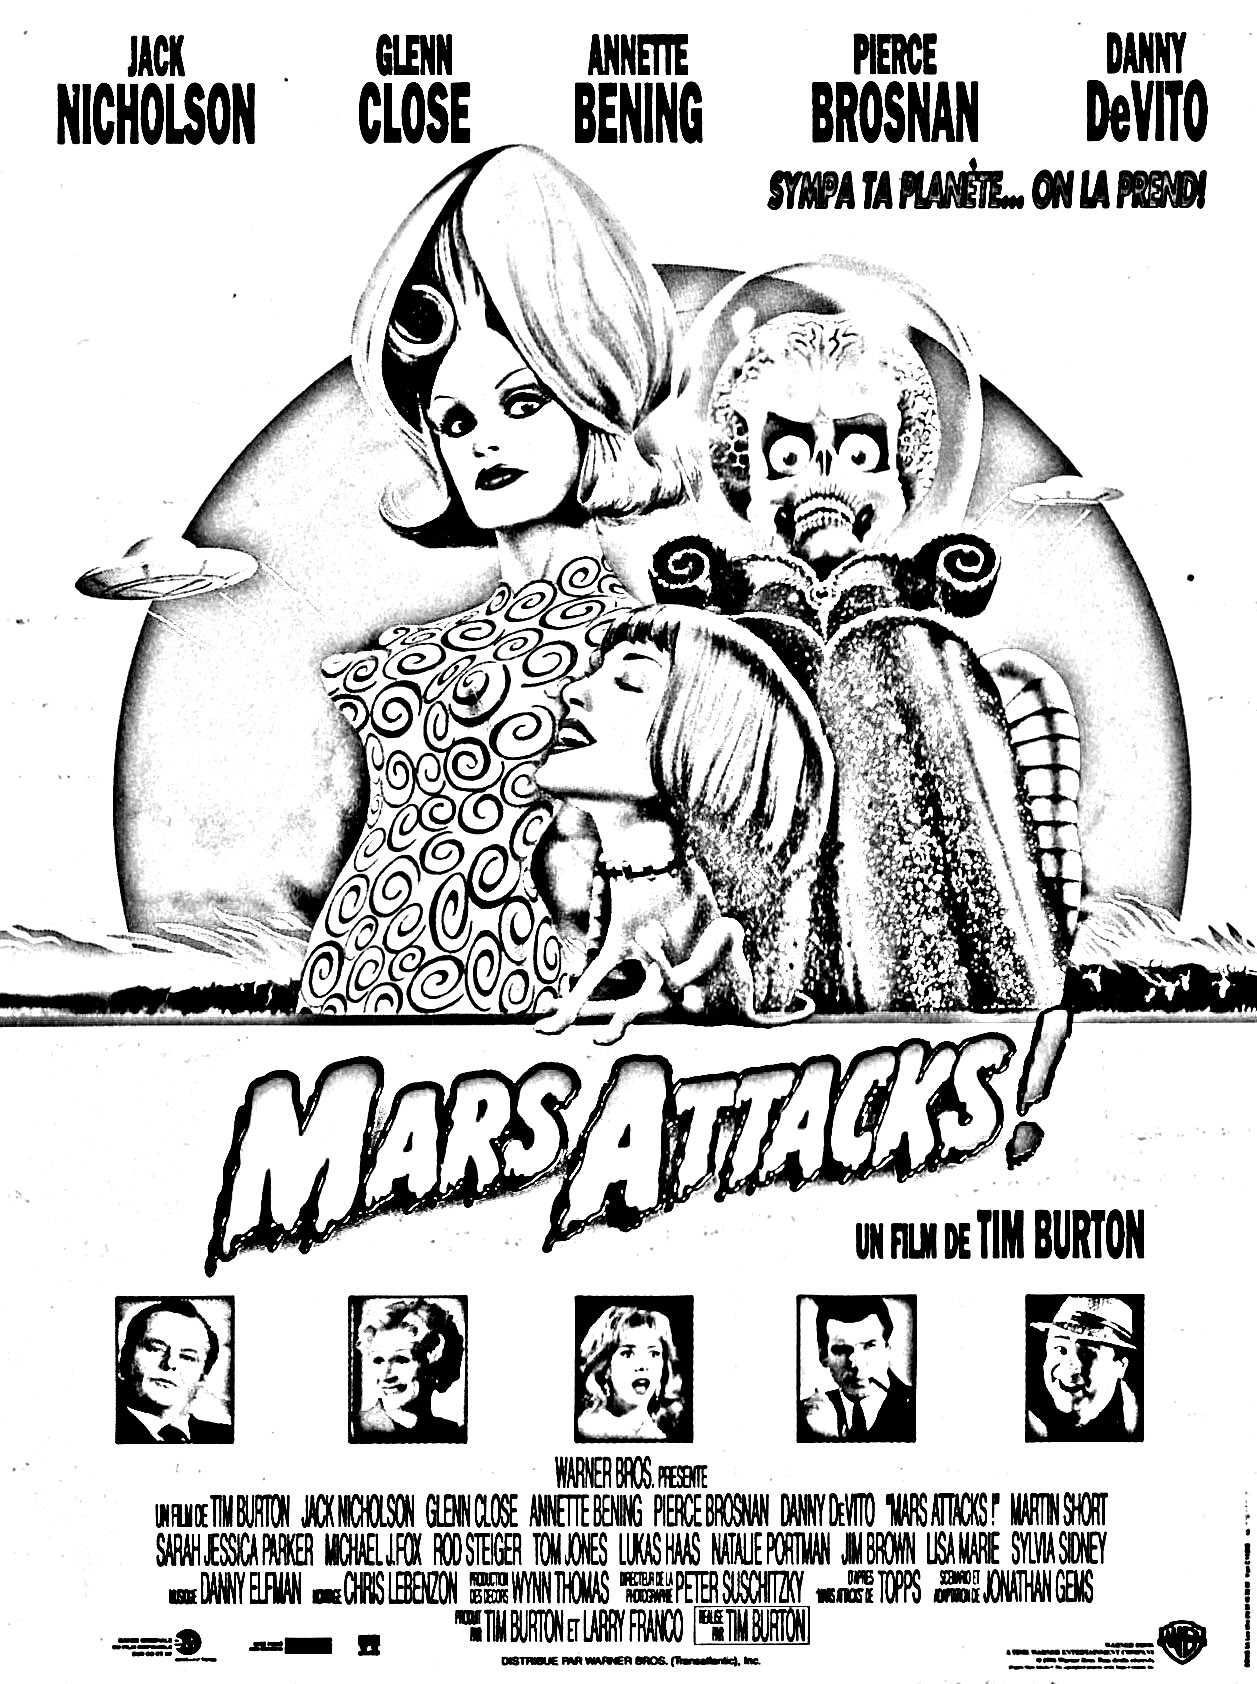 1996 Tim Burton movie Mars Attacks !